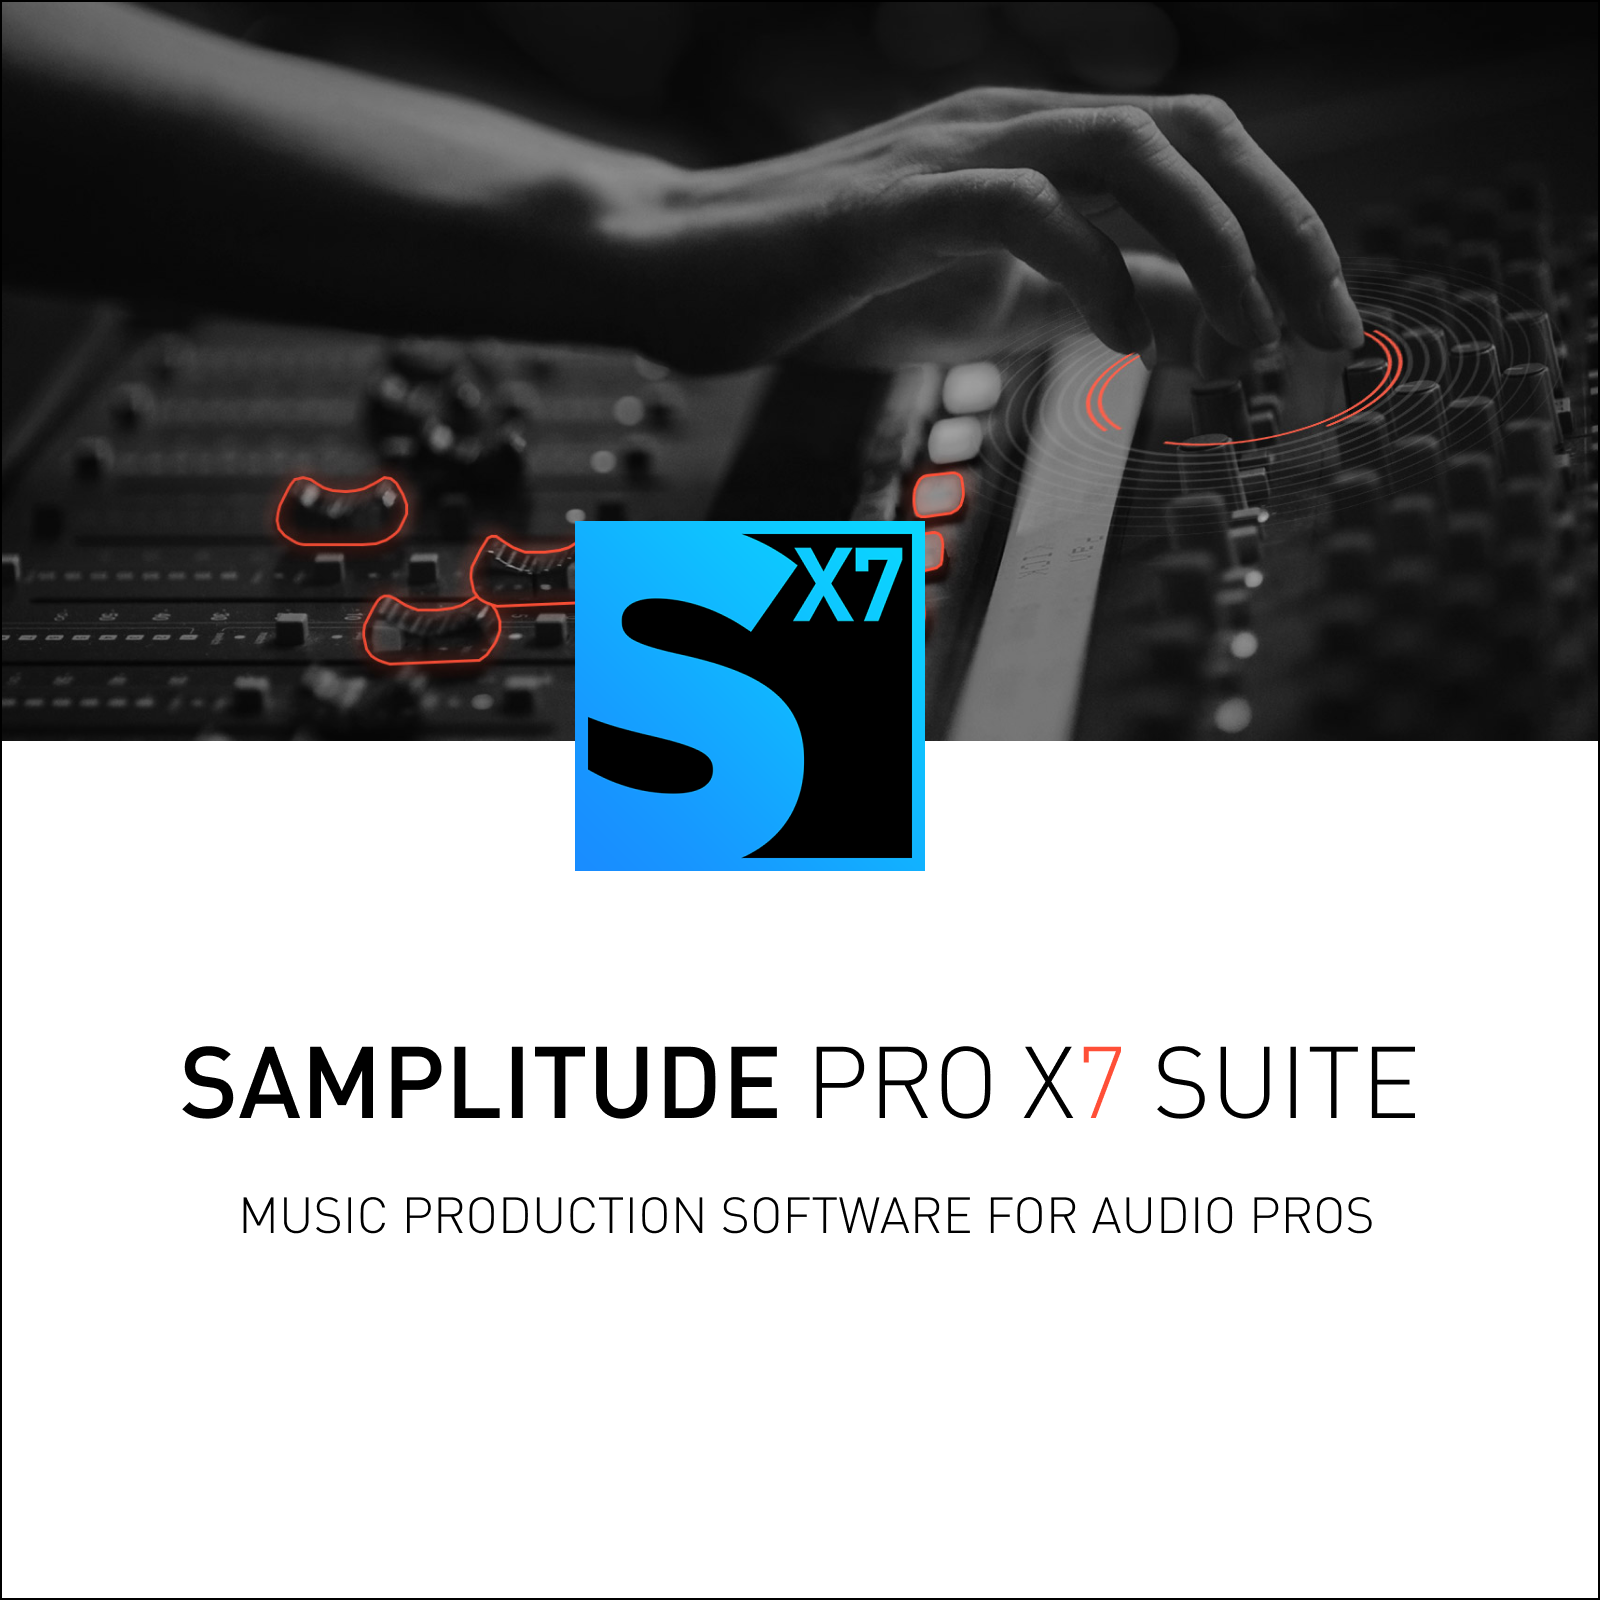 Samplitude Pro X7 Suite